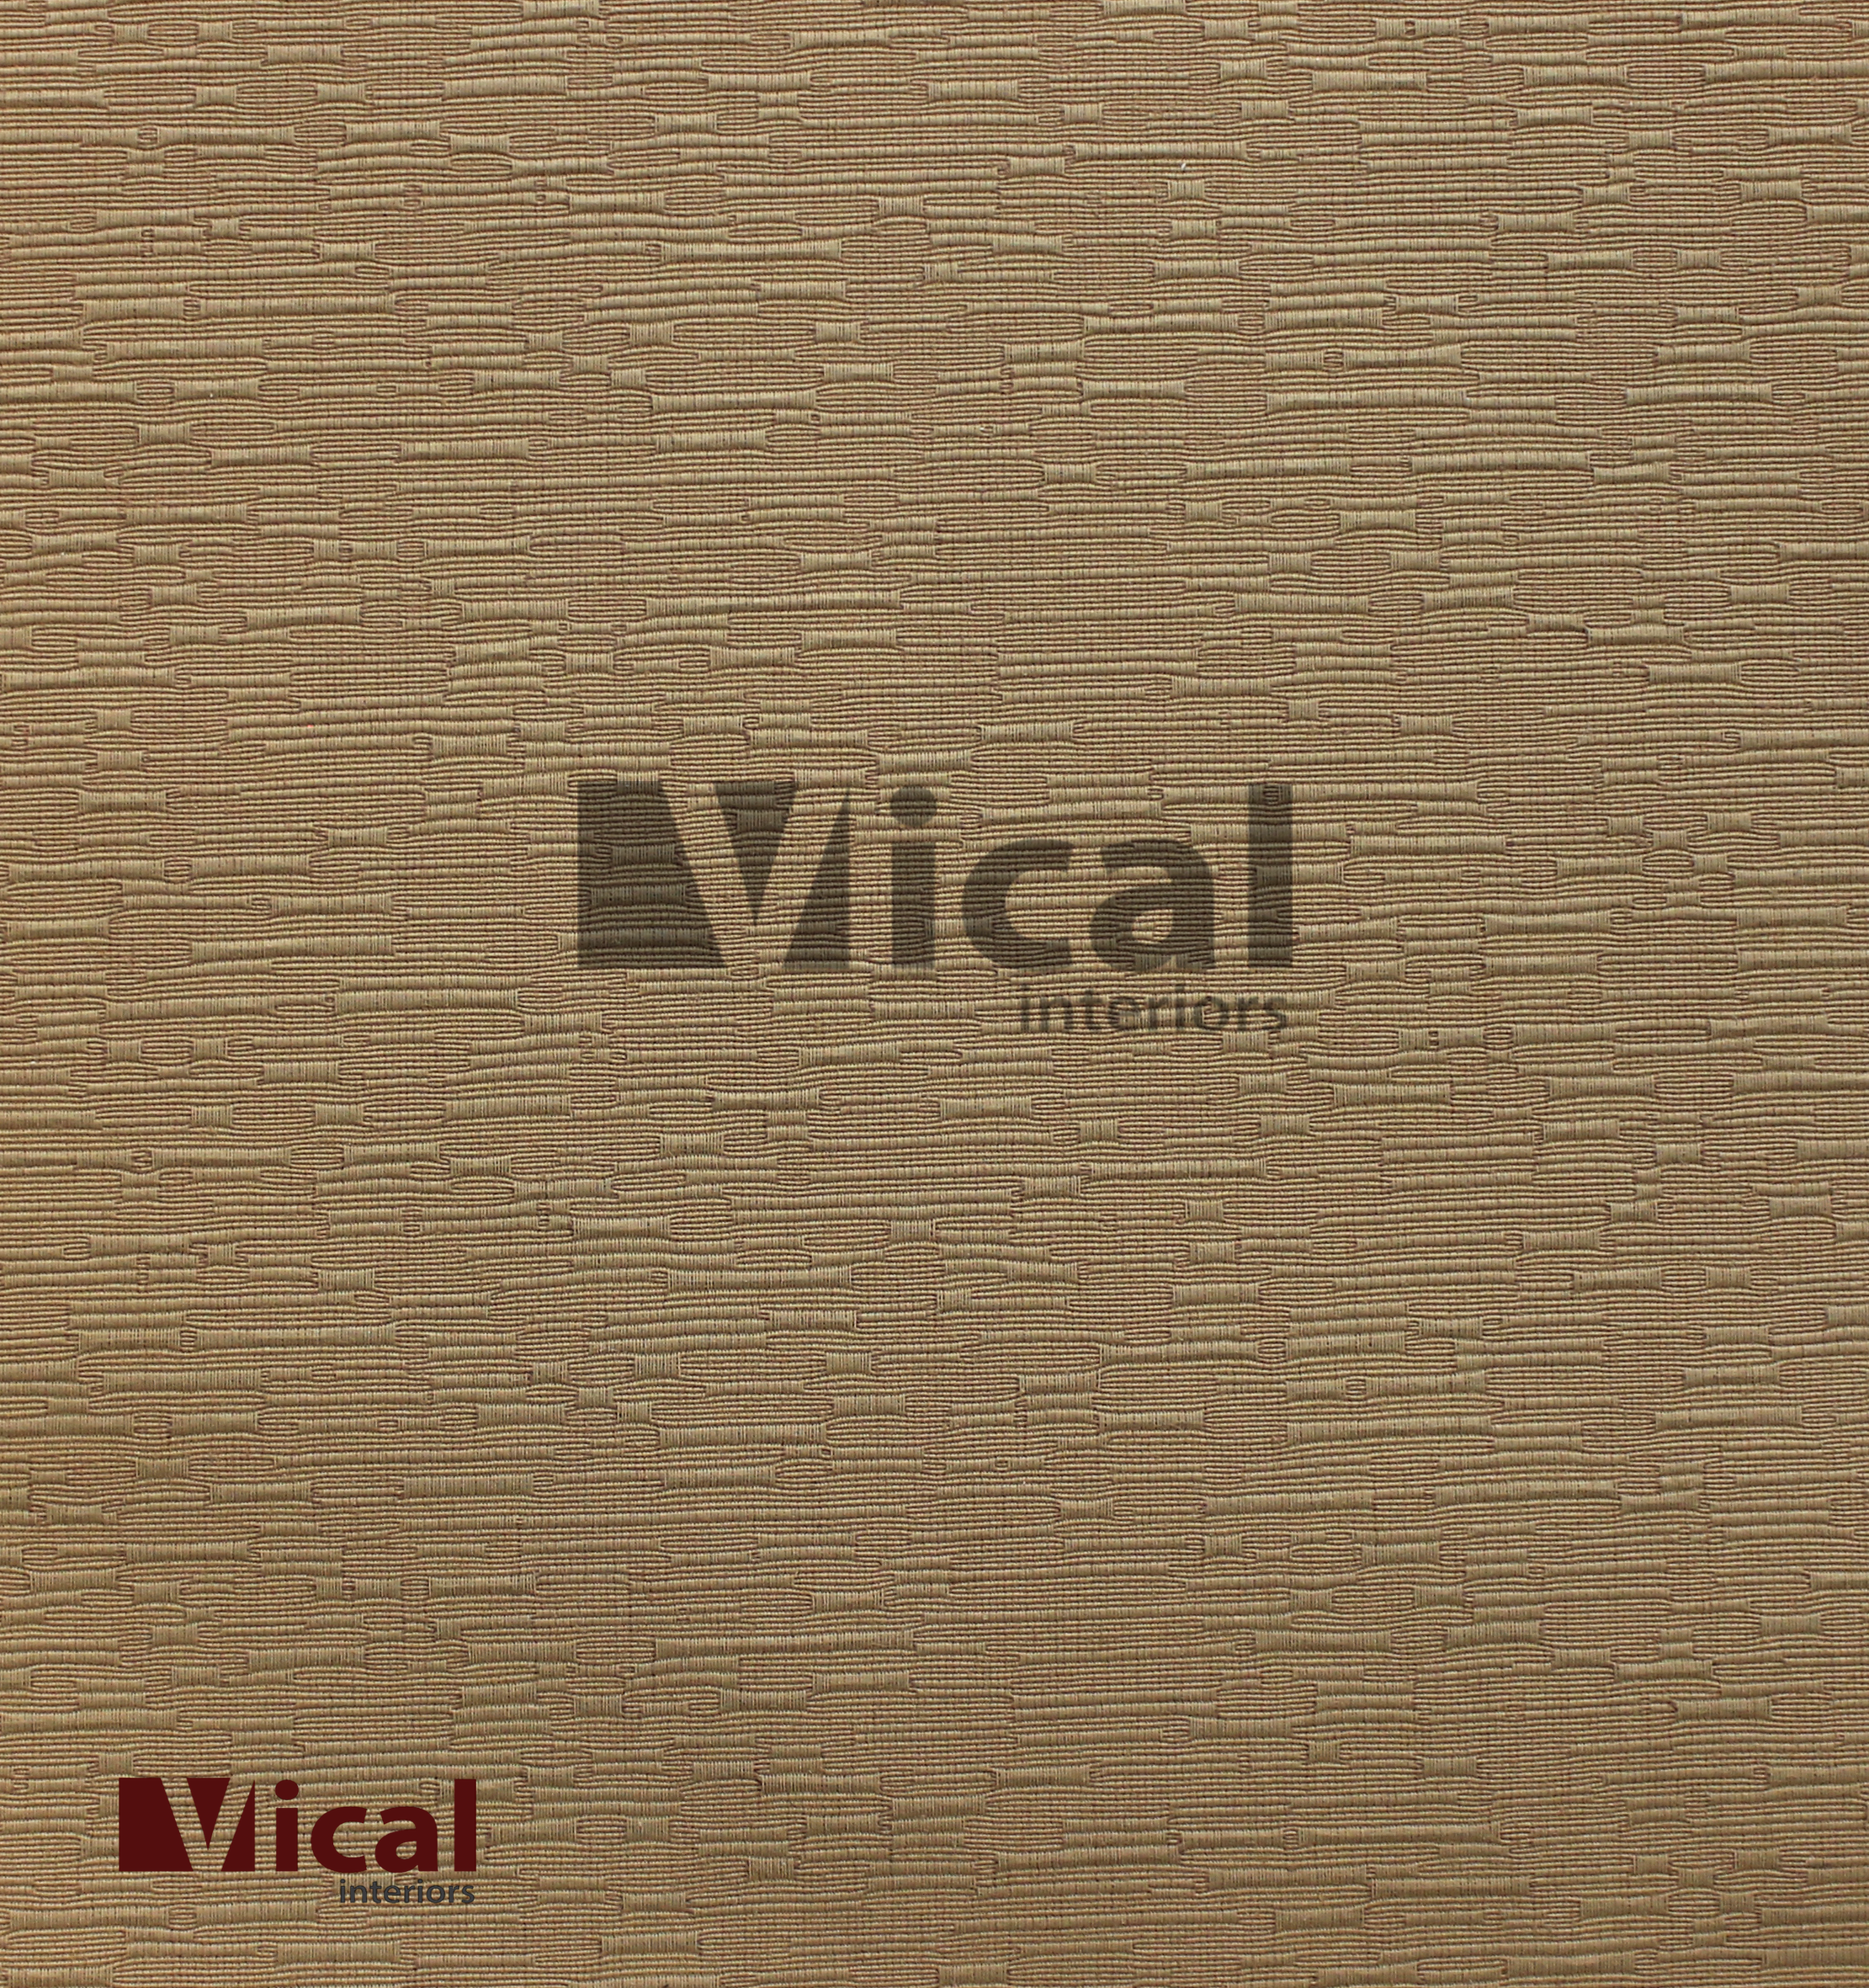 Vical Interiors